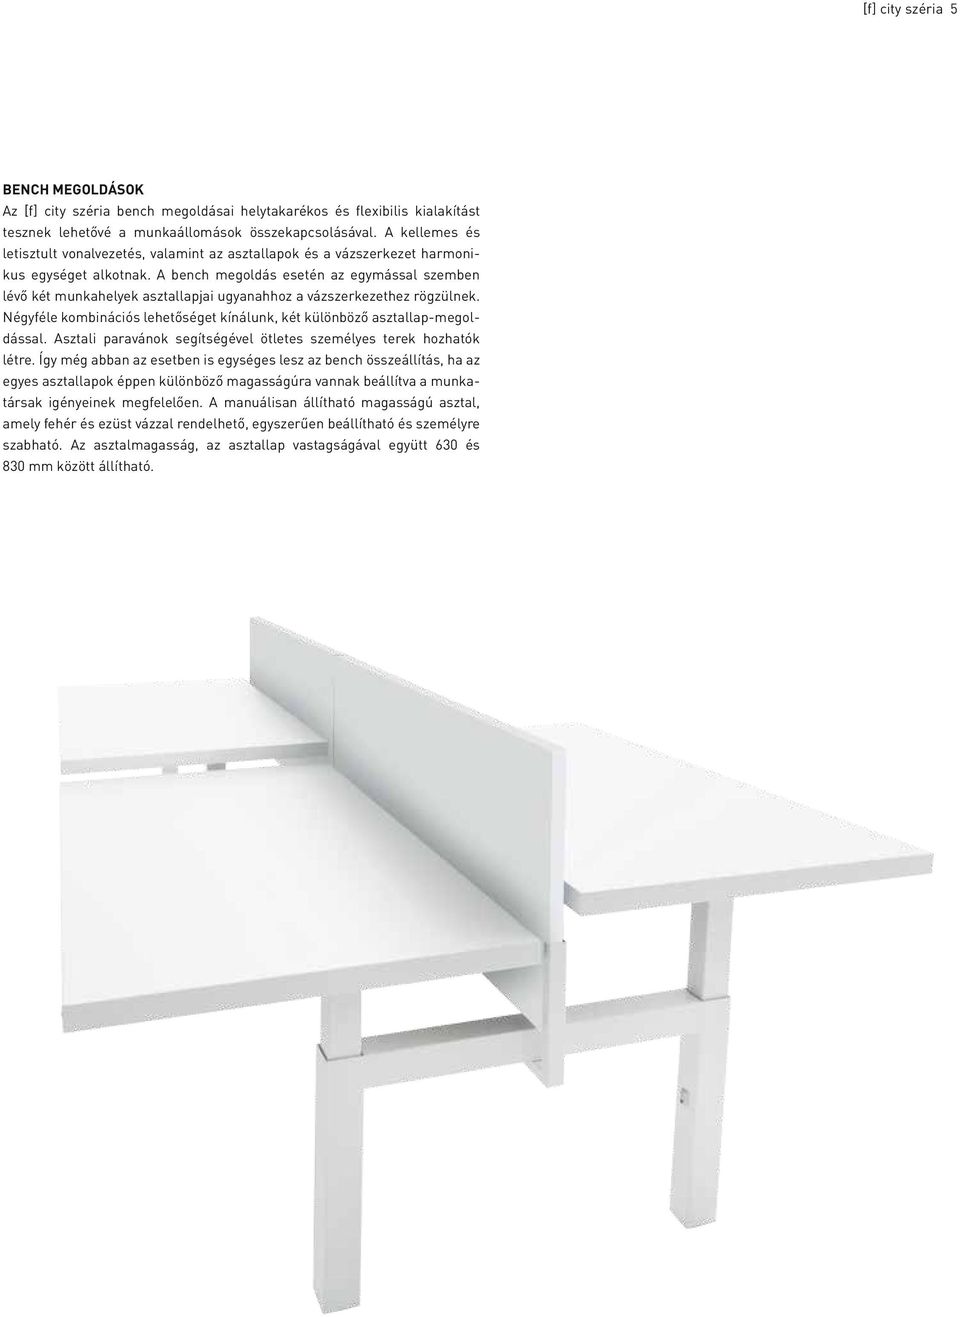 A bench megoldás esetén az egymással szemben lévő két munkahelyek asztallapjai ugyanahhoz a vázszerkezethez rögzülnek. Négyféle kombinációs lehetőséget kínálunk, két különböző asztallap-megoldással.